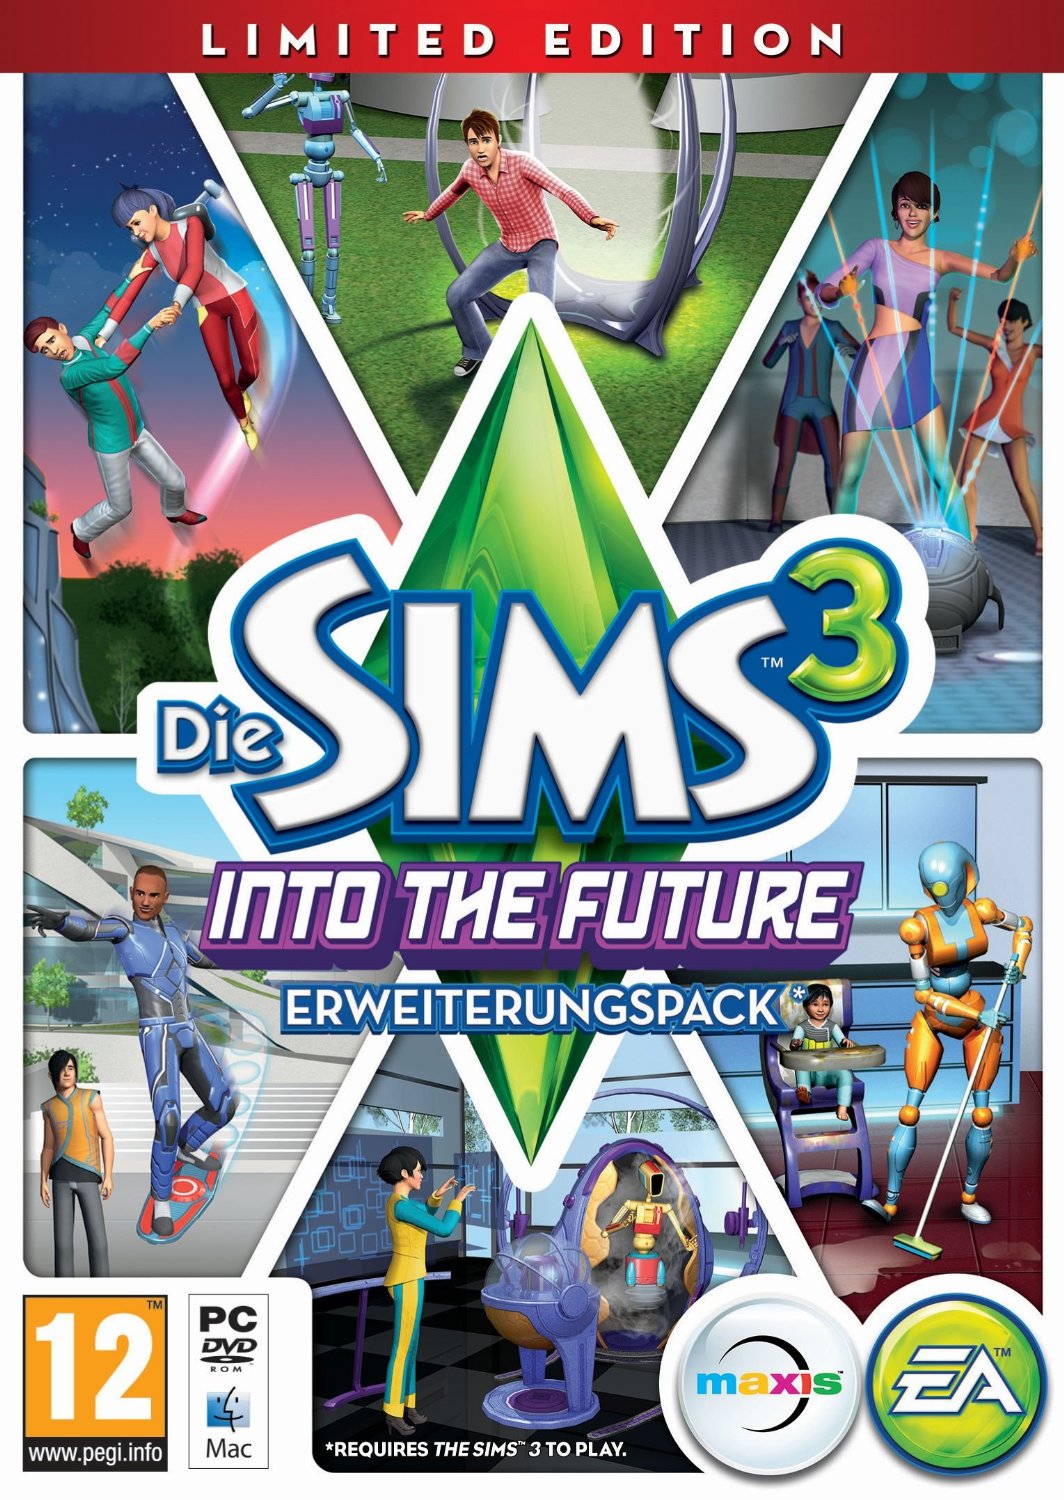 Cover von "Sims 3" mit neuen Technologien wie Raketenrucksack